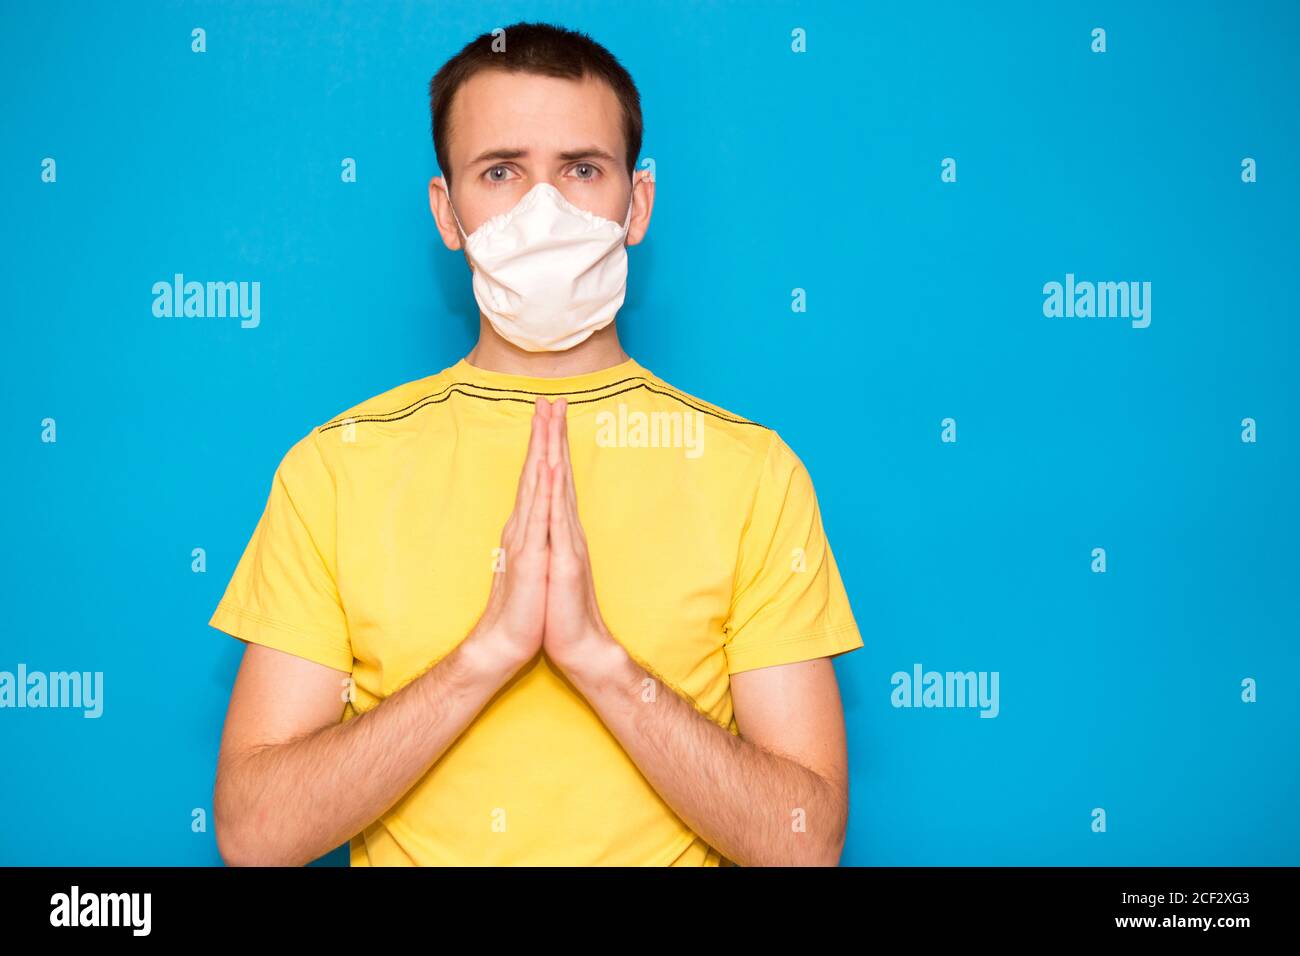 Retrato de un joven en una camiseta amarilla con máscara protectora contra el coronavirus, haciendo un gesto de rezo por la salud contra el virus de la corona es muy rápido Foto de stock